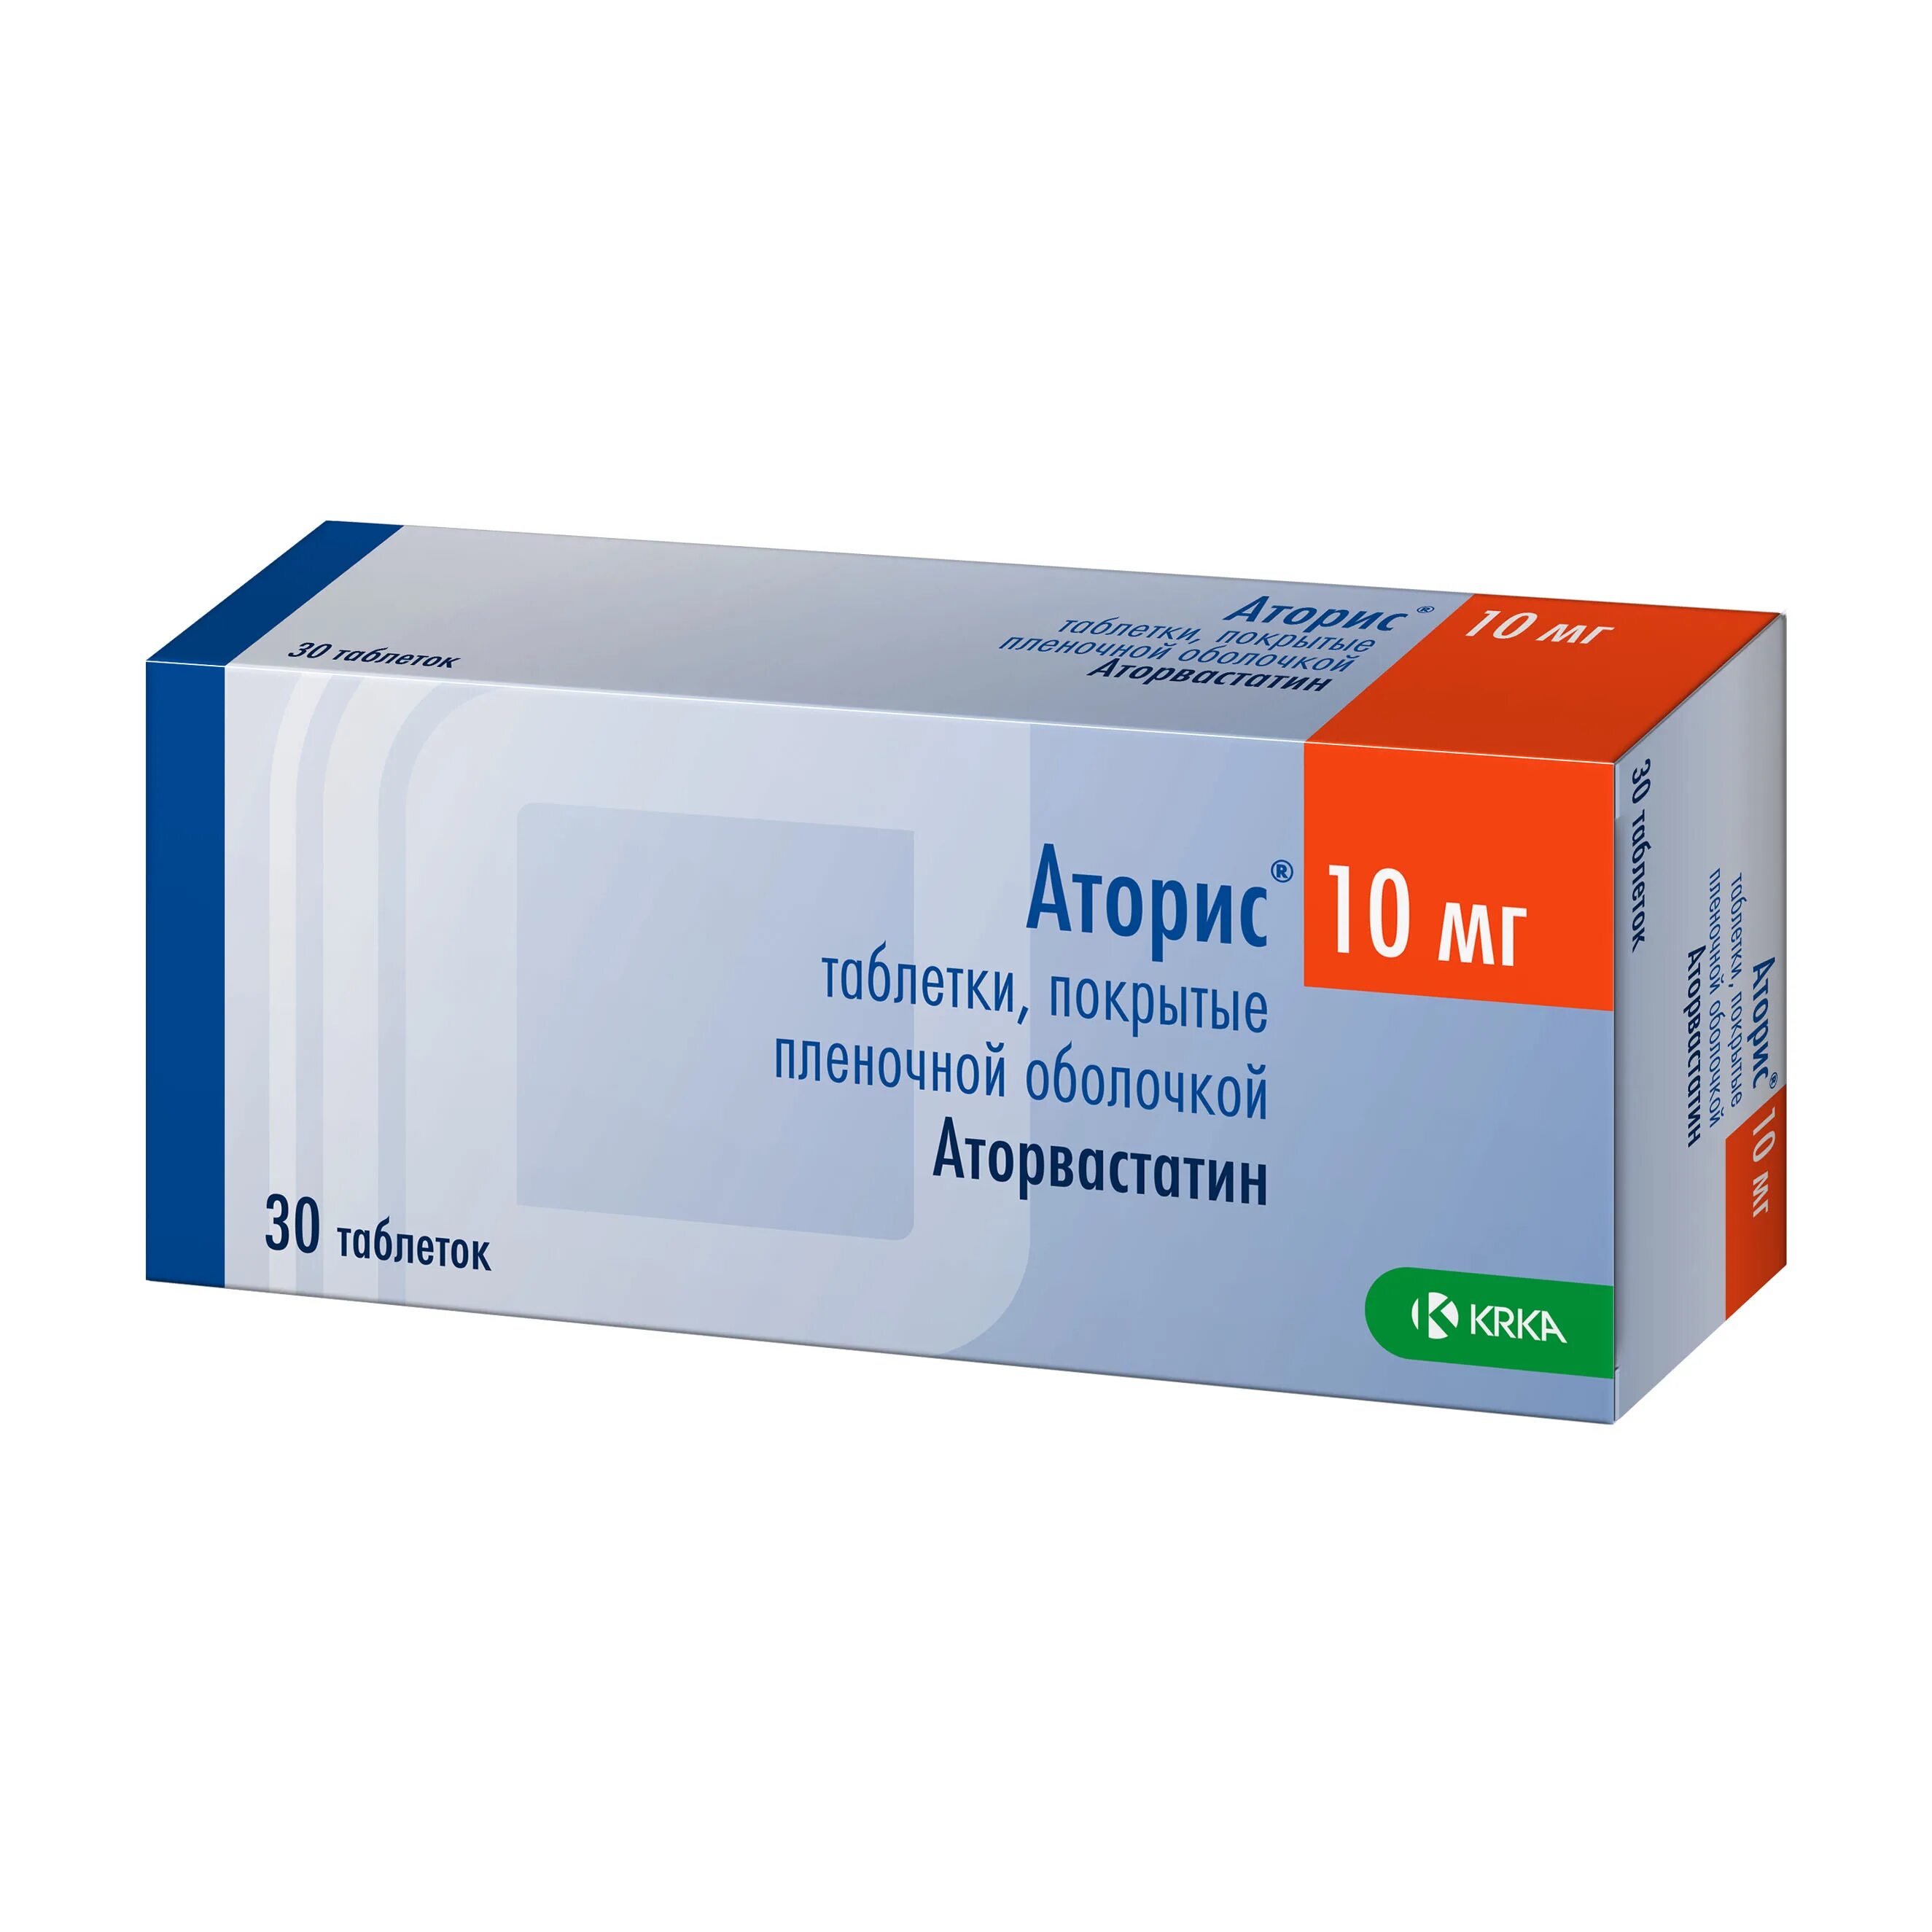 Аторис 10 аналоги. Рисперидон КРКА 2мг. Ивабрадин канон 5 мг. Рисперидон 4 мг таблетка. Бикситор 60.